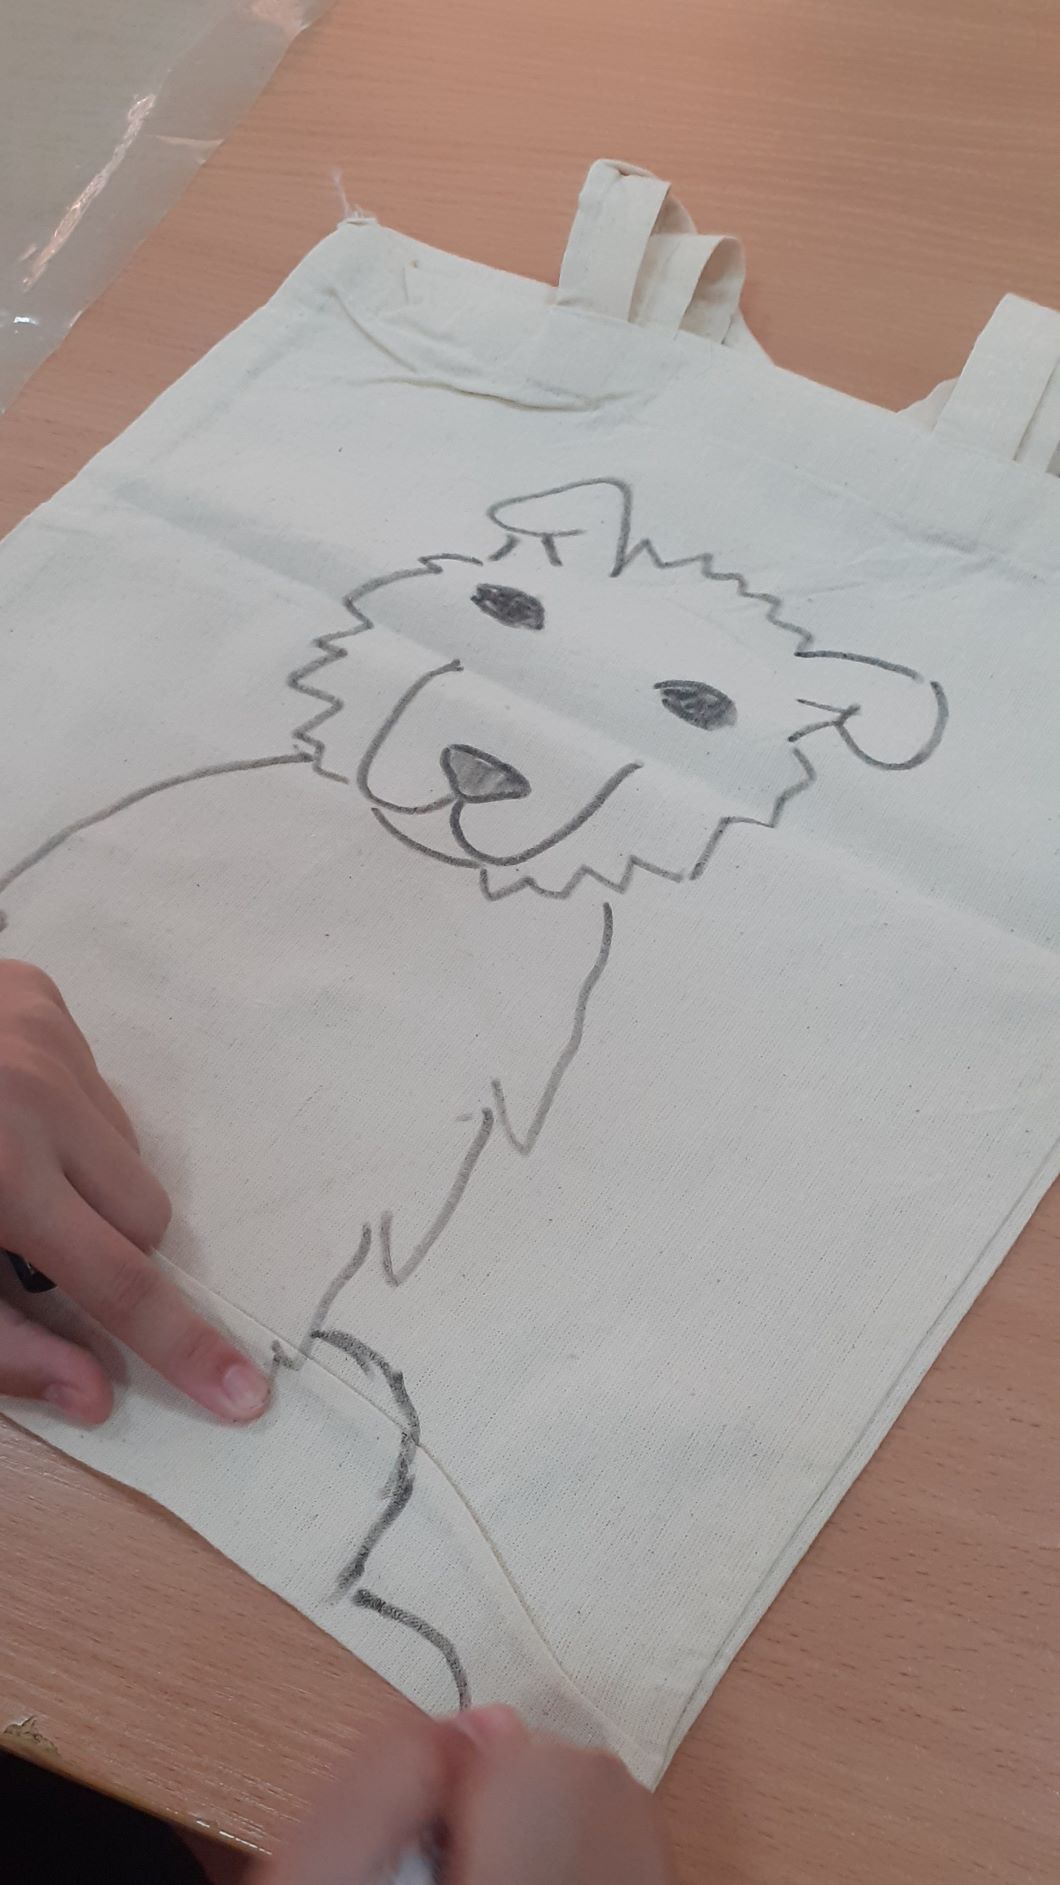 rysowanie, projektowanie wizerunku psa na torbie